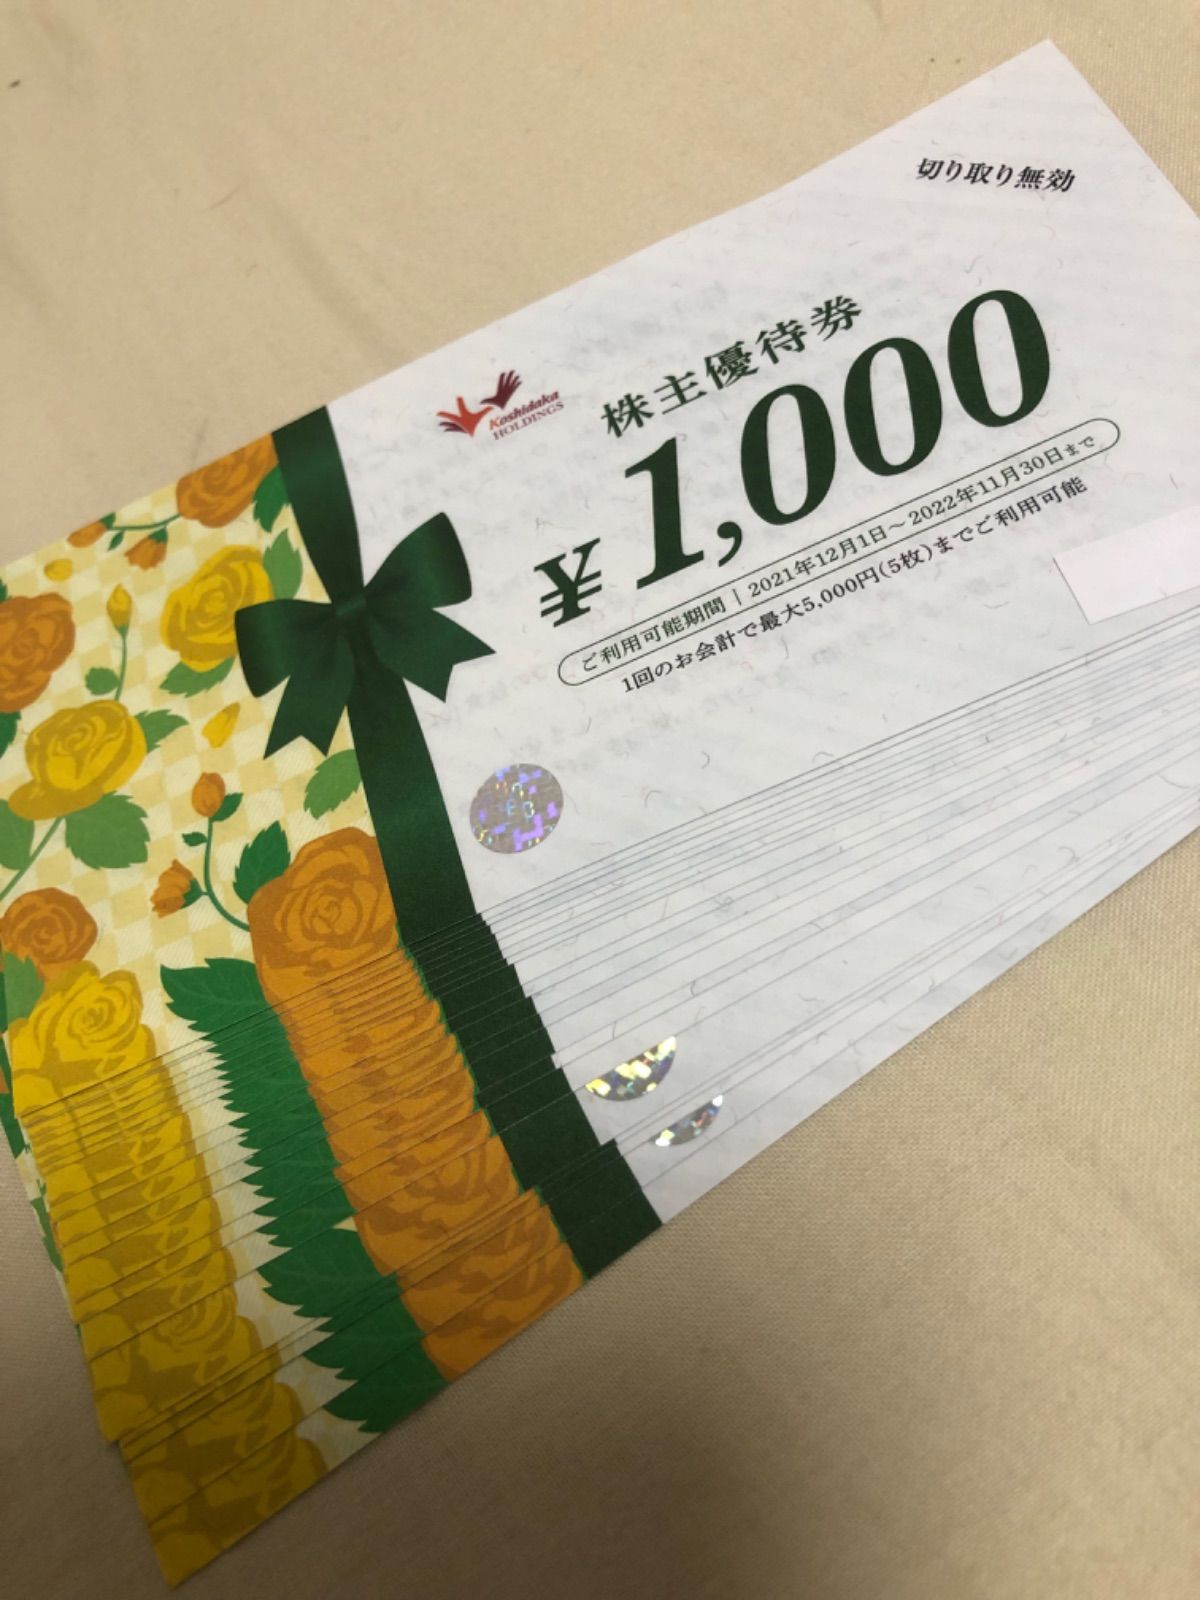 コシダカ　20,000円分